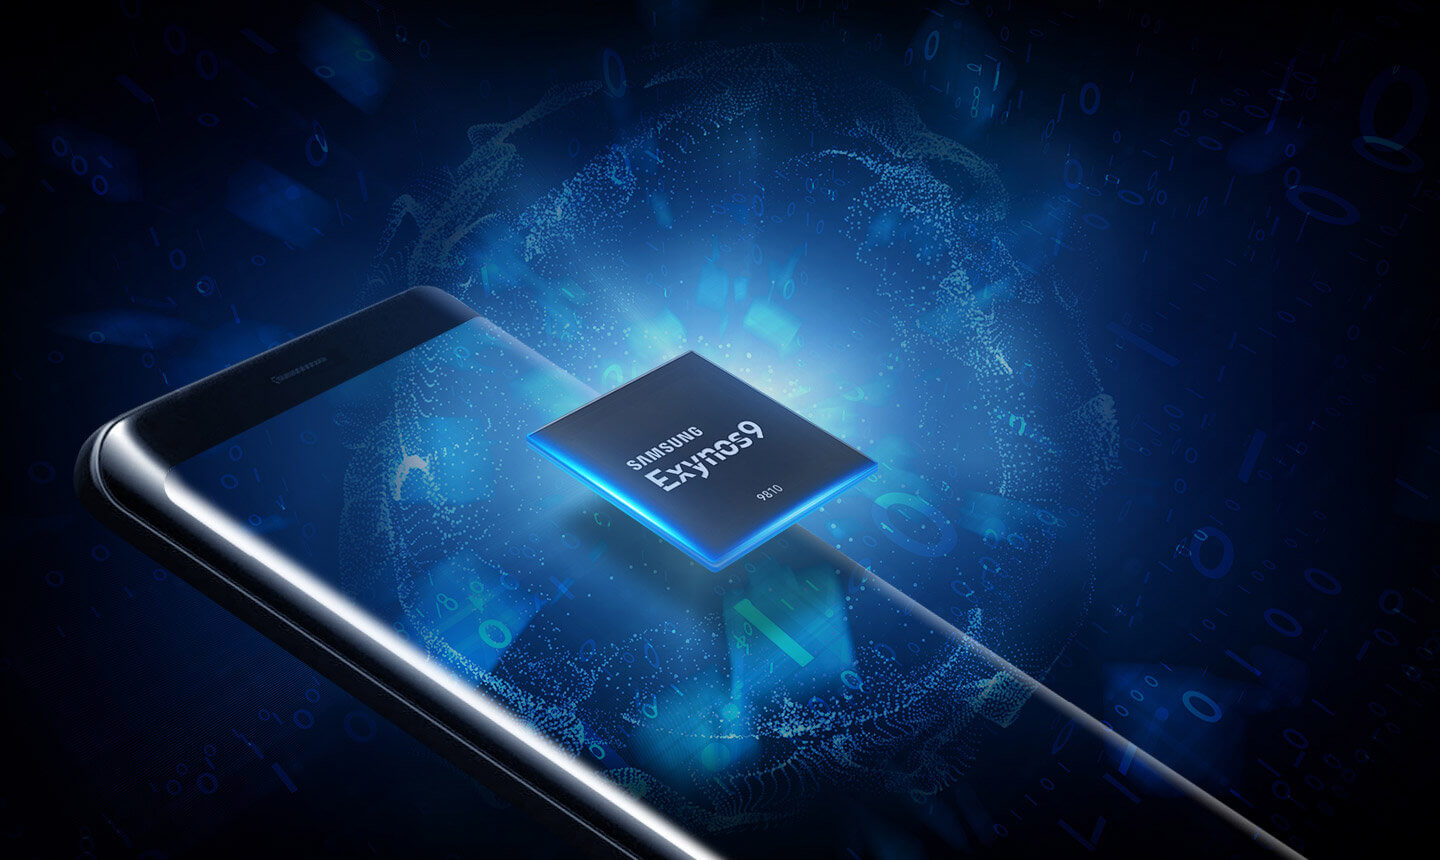 Samsung Galaxy S10 получит 8-ядерный процессор с 3-кластерной конфигурацией